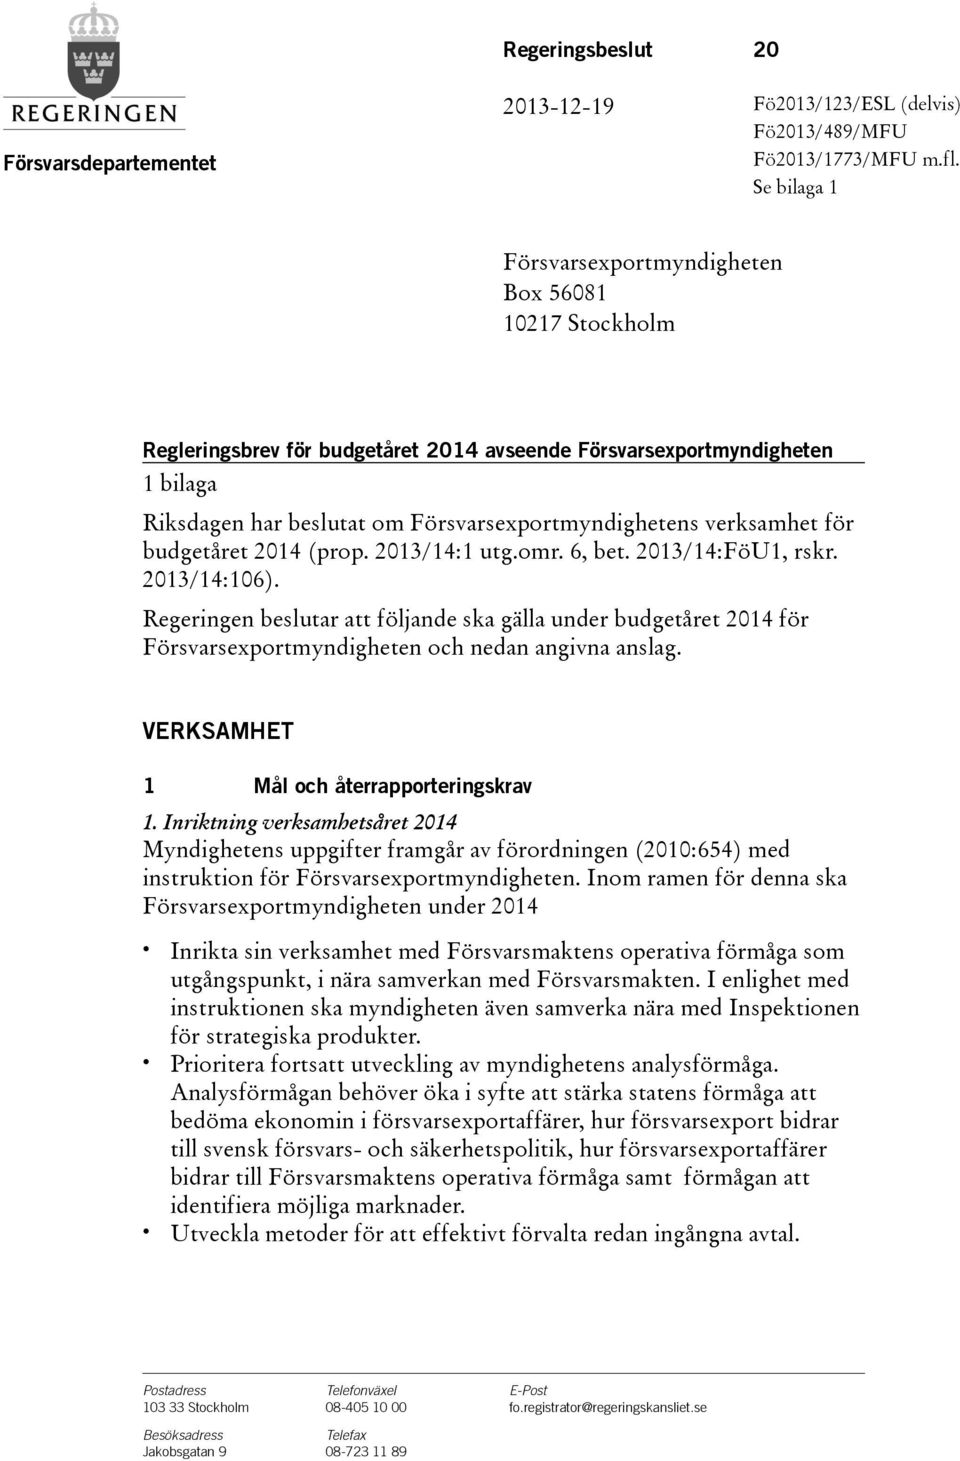 verksamhet för budgetåret (prop. 2013/14:1 utg.omr. 6, bet. 2013/14:FöU1, rskr. 2013/14:106).